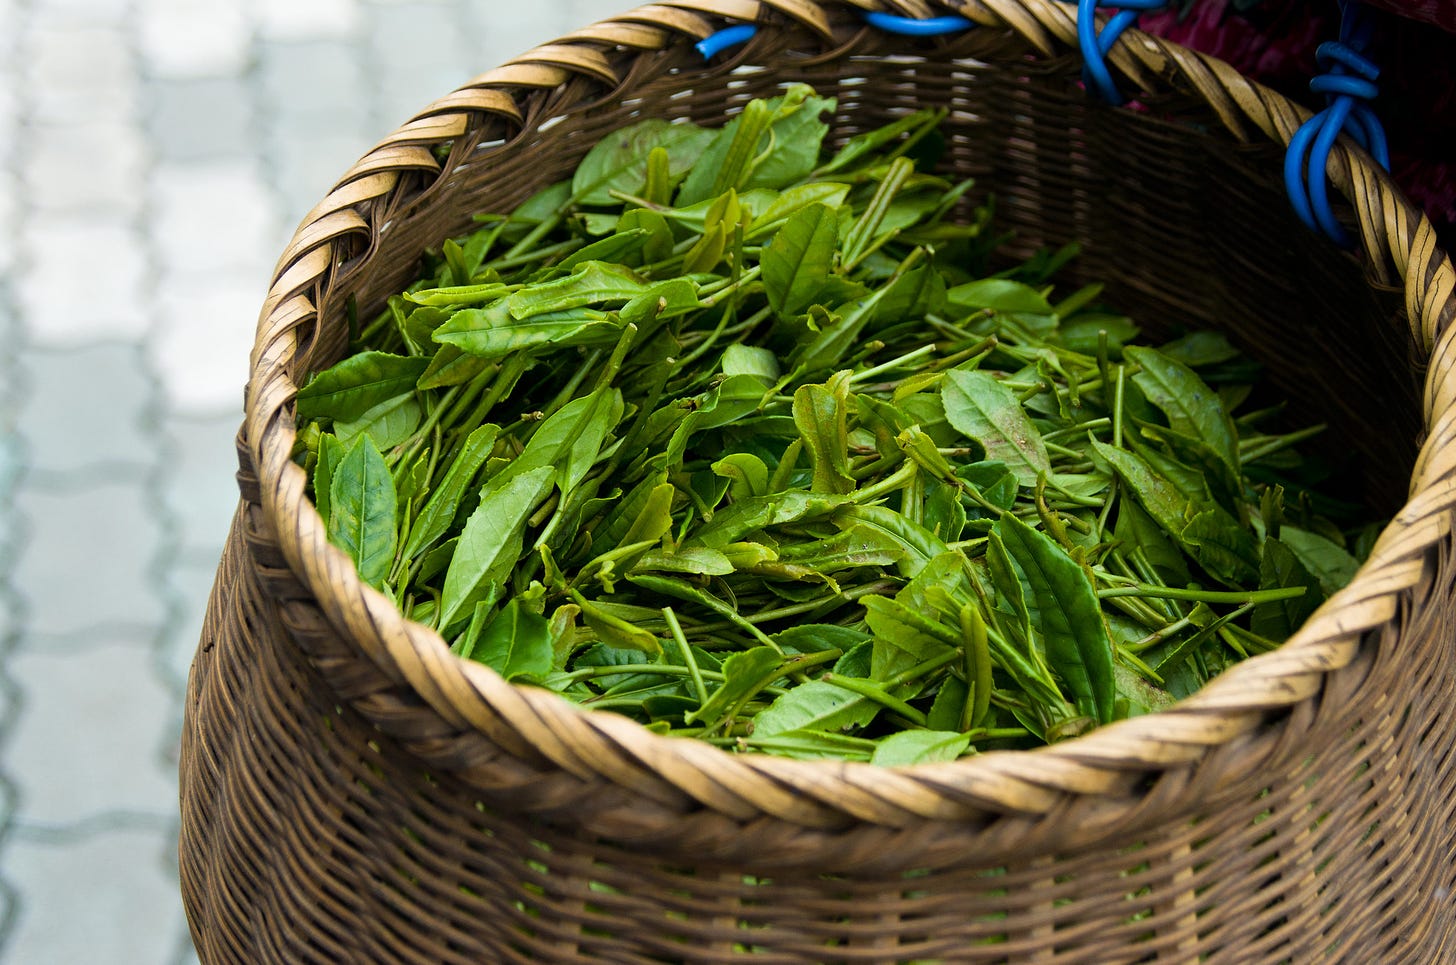 ID: Freshly picked green tea leaves